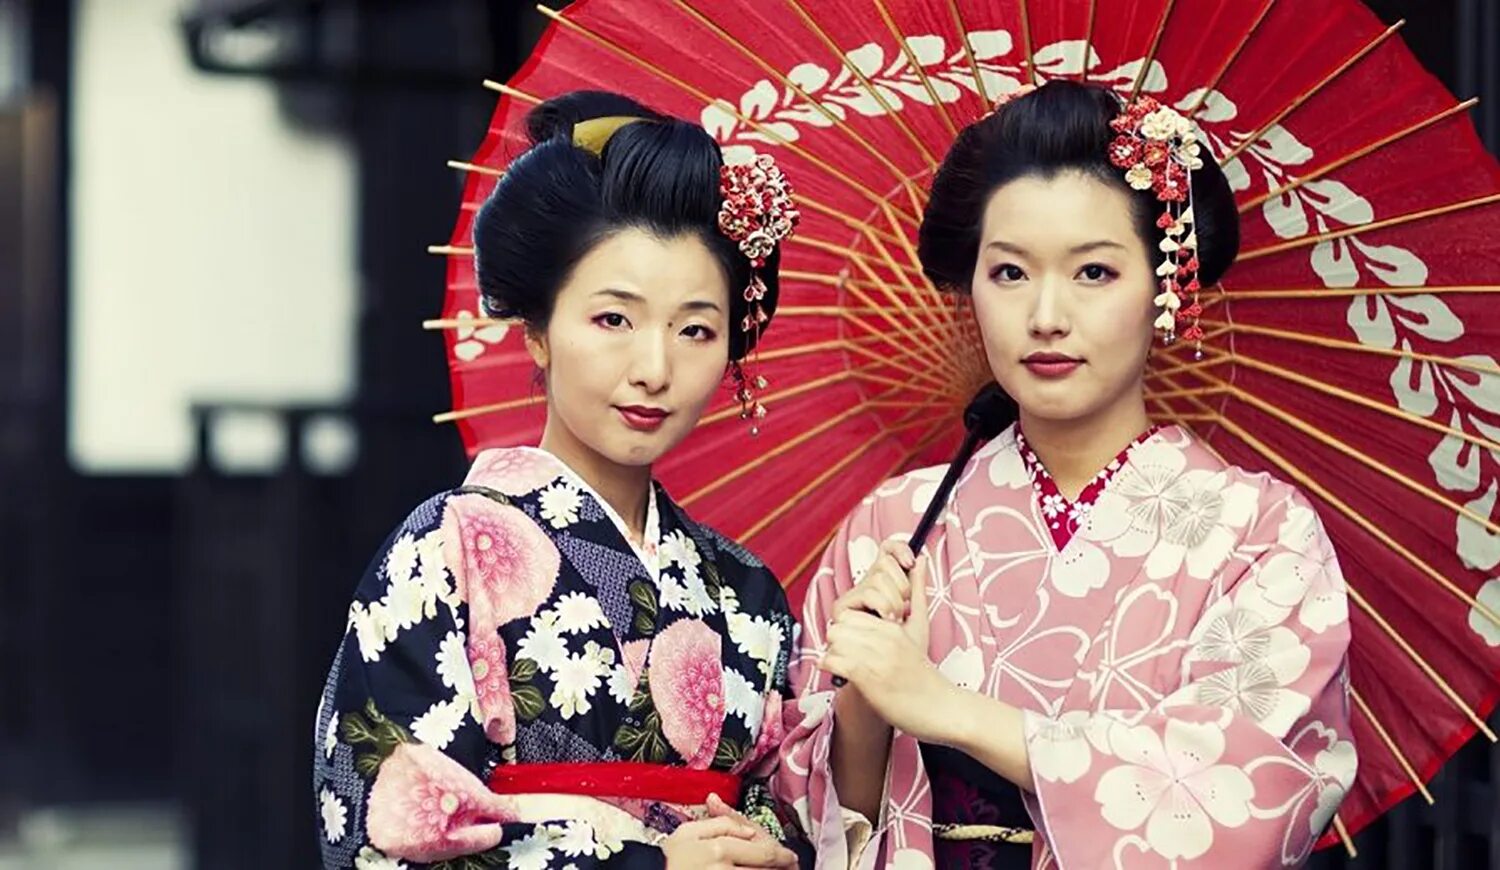 Япония люди. Японские имена женщин. День культуры в Японии. Японские имена гейш. Как называют девушку в японии